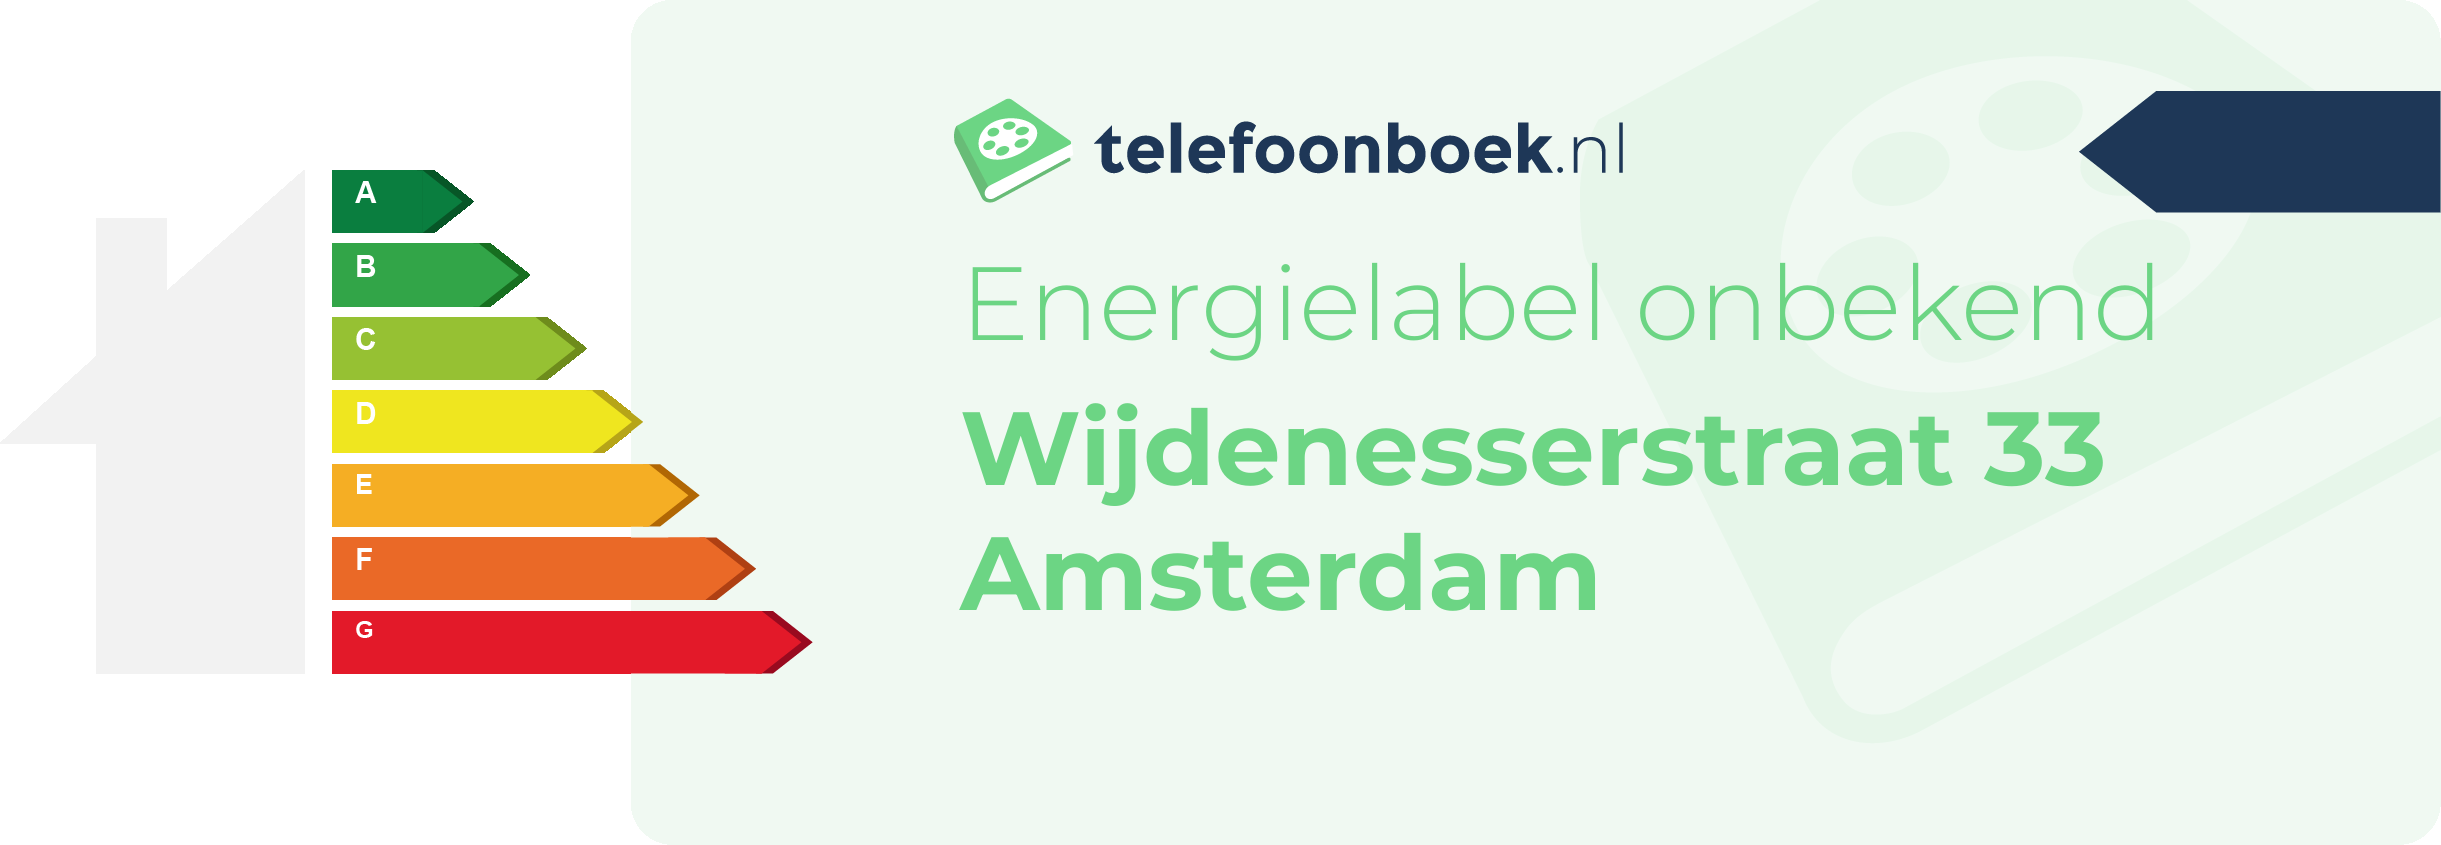 Energielabel Wijdenesserstraat 33 Amsterdam